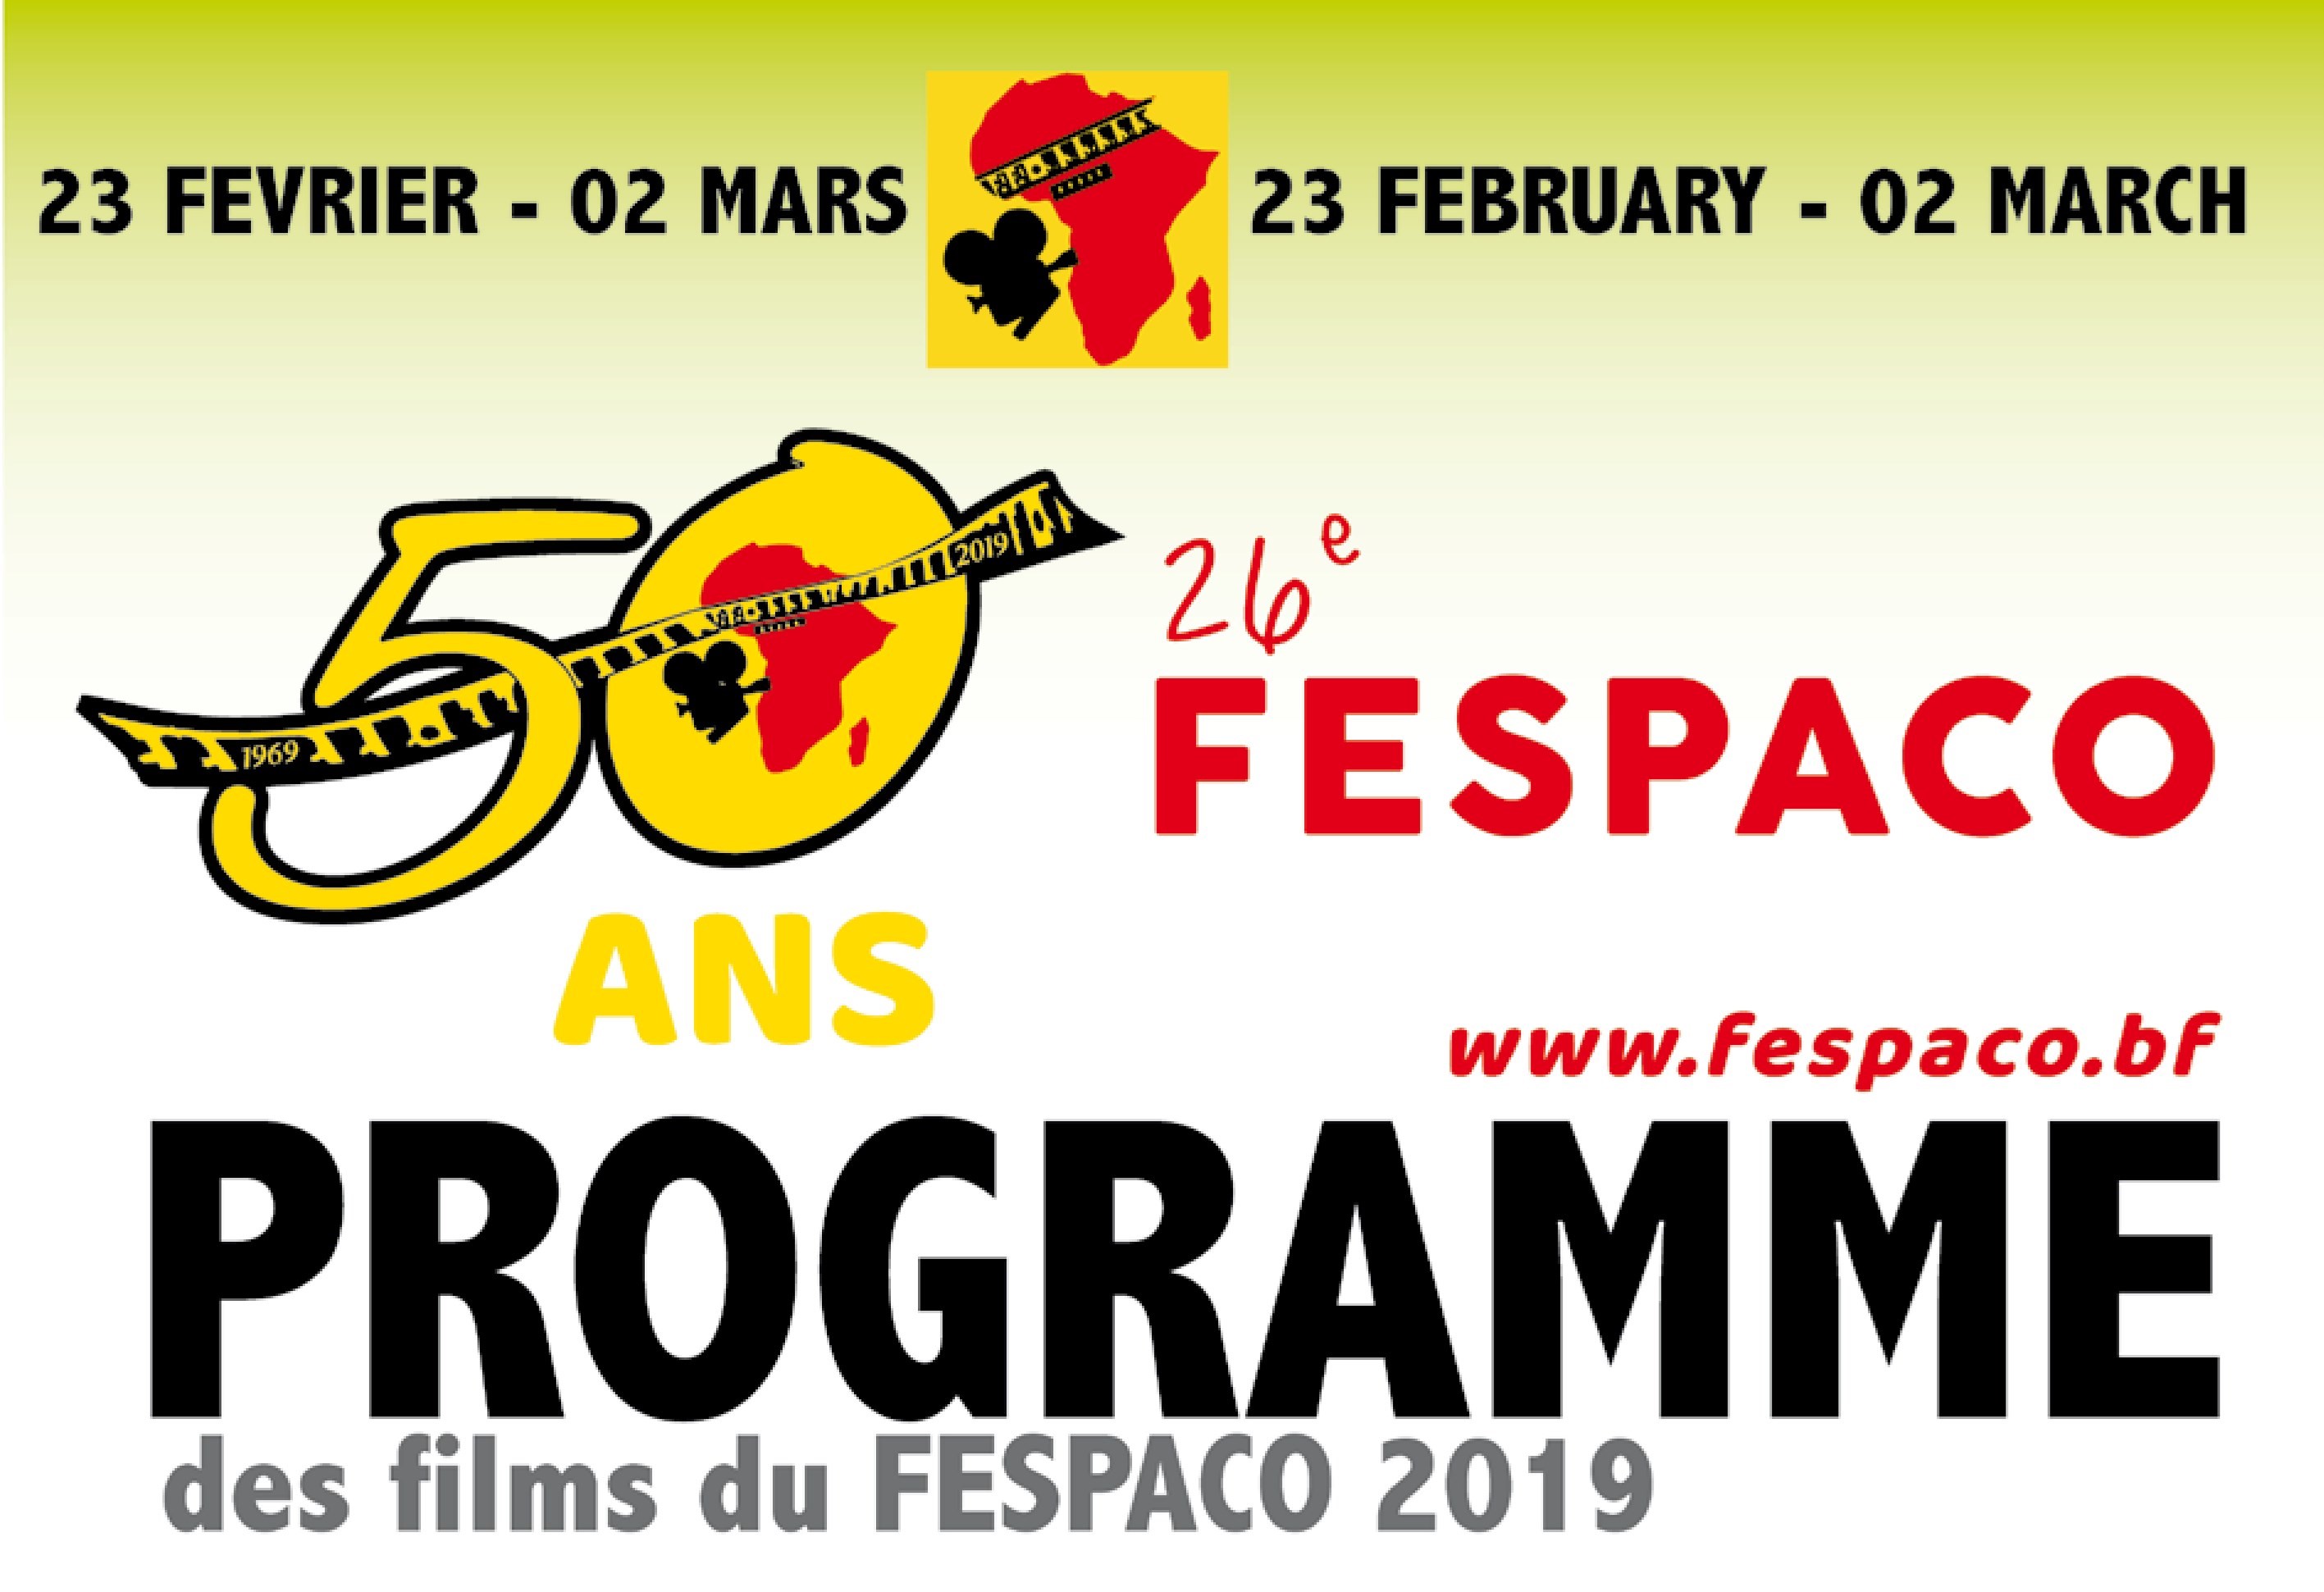 Fespaco 2019 : Programme de projection des films du vendredi 01 mars 2019